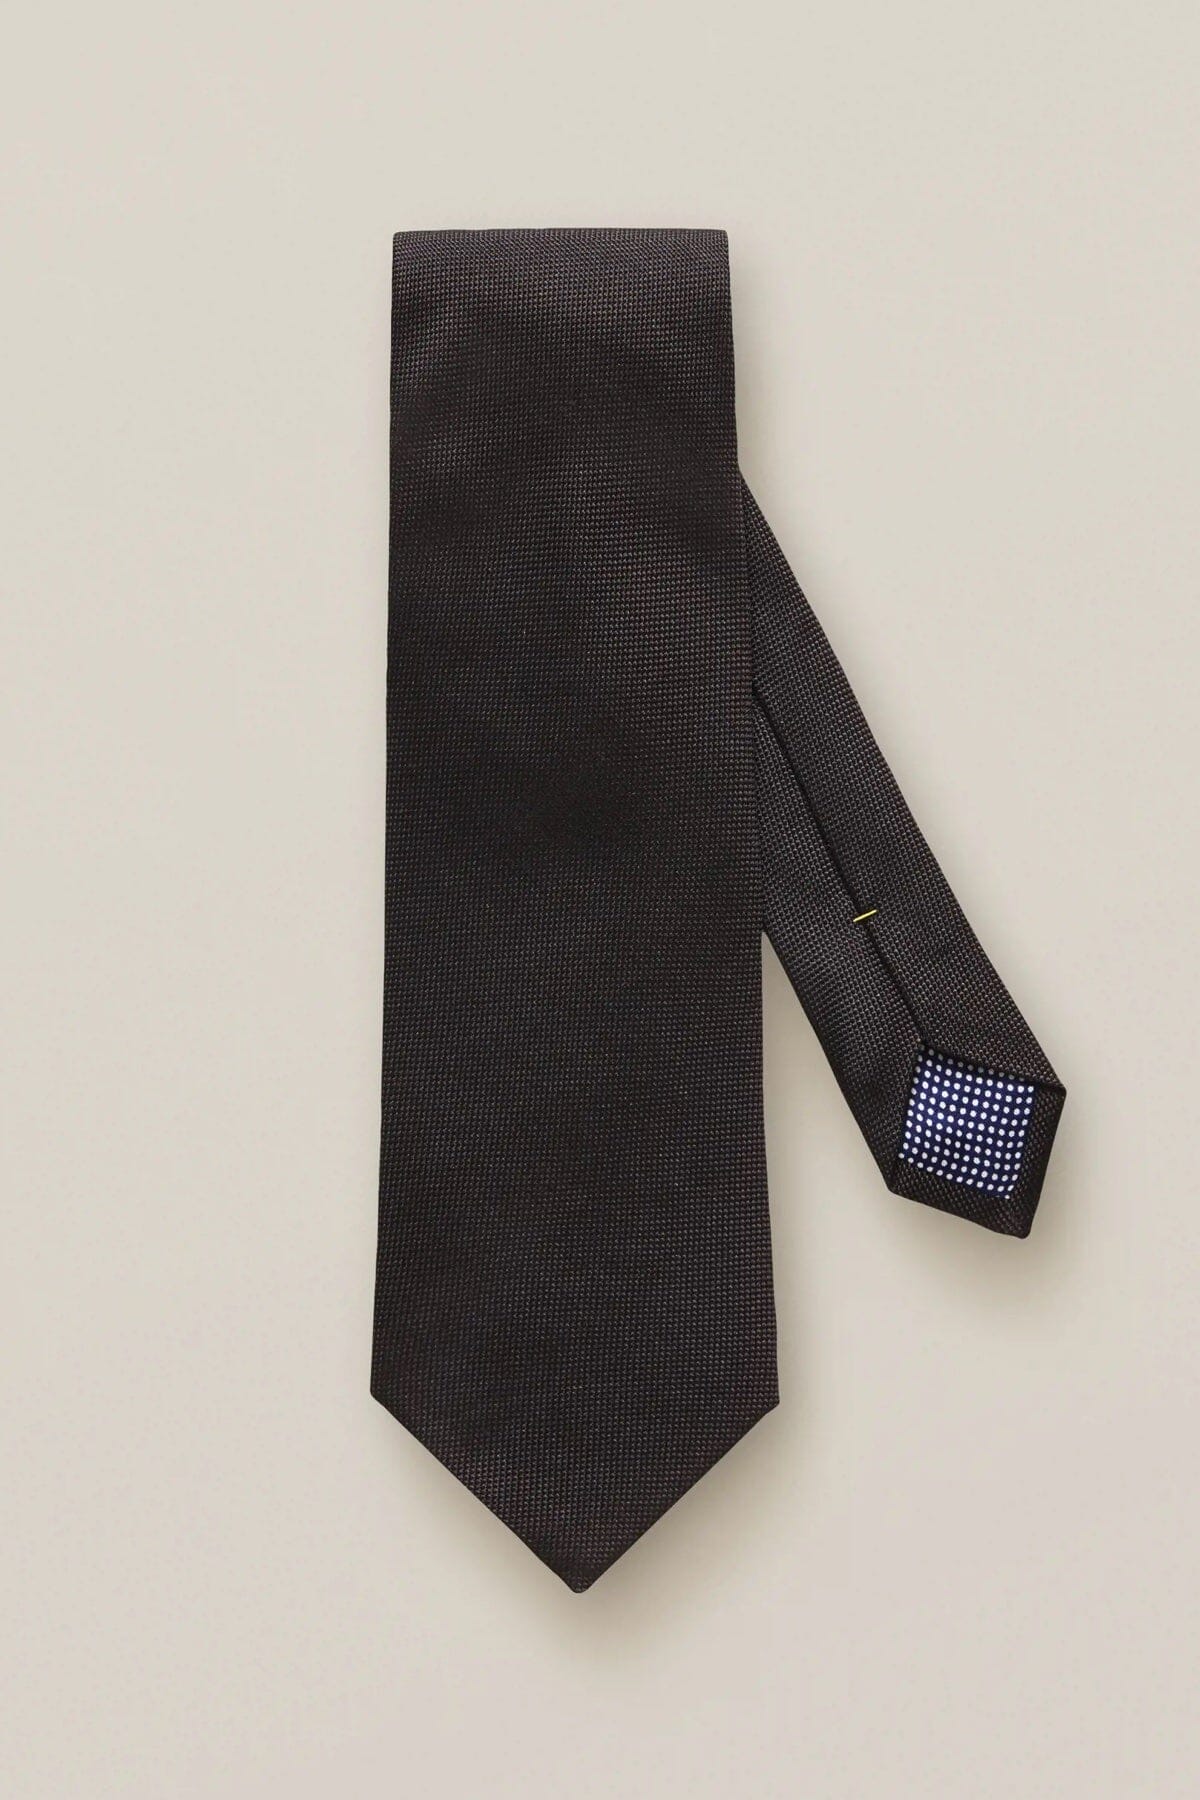 Cravate noire en soie nattée Eton Unique Noir 